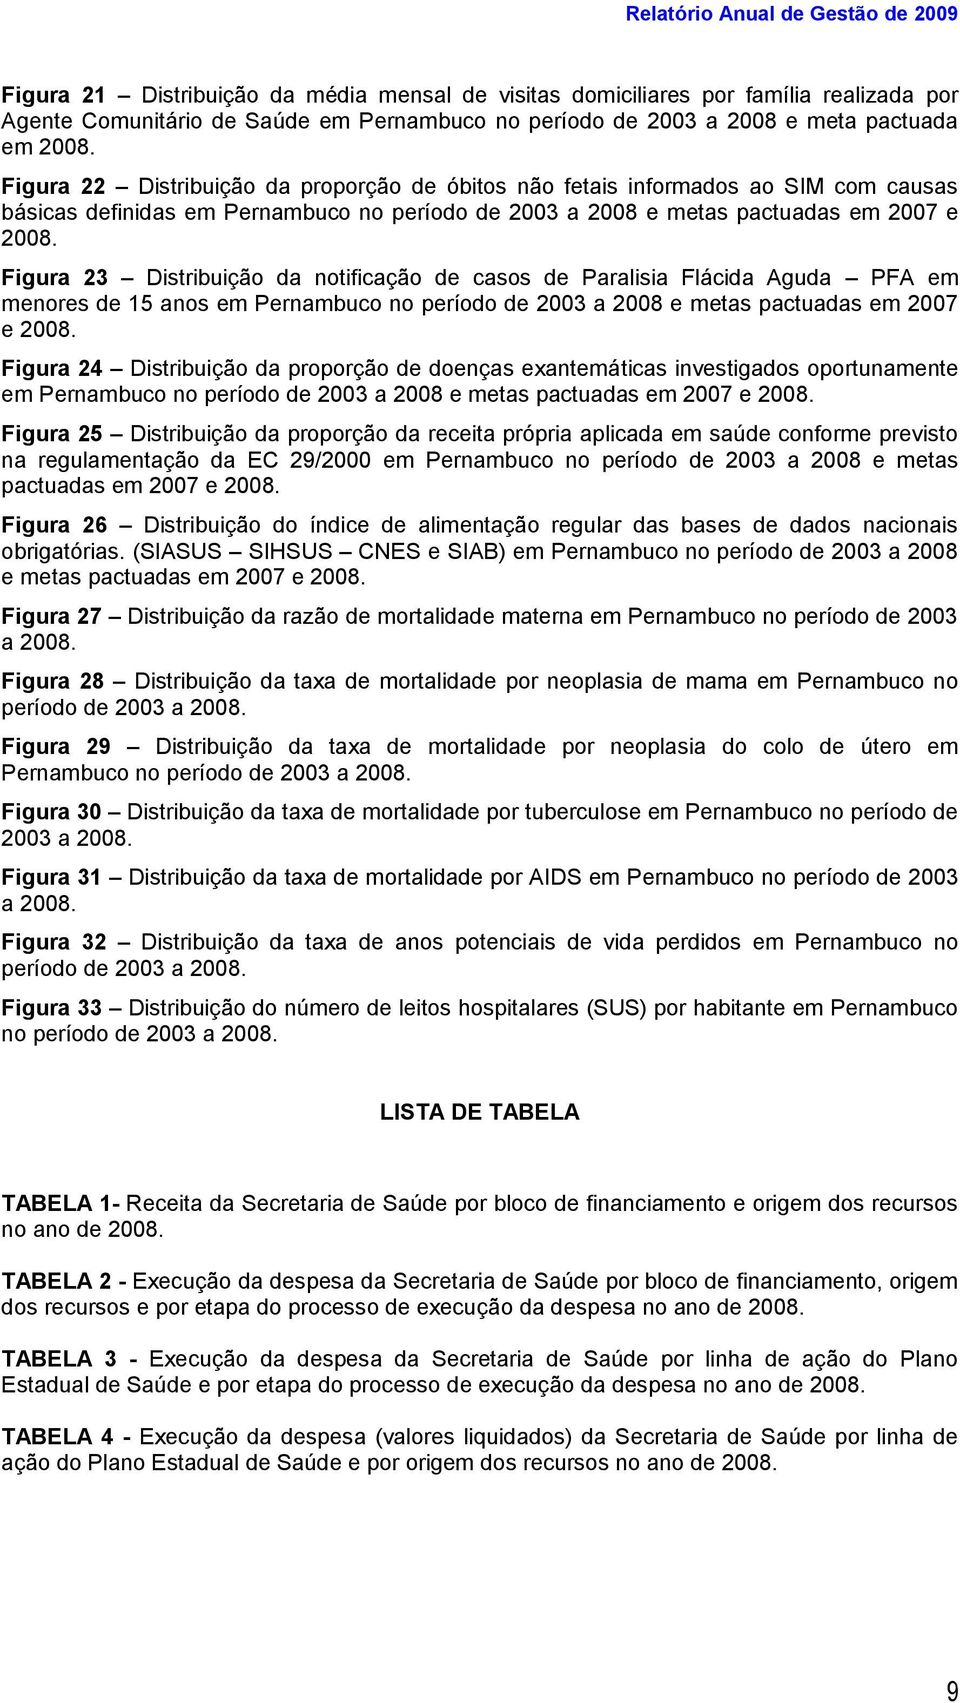 Figura 23 Distribuição da notificação de casos de Paralisia Flácida Aguda PFA em menores de 15 anos em Pernambuco no período de 2003 a 2008 e metas pactuadas em 2007 e 2008.